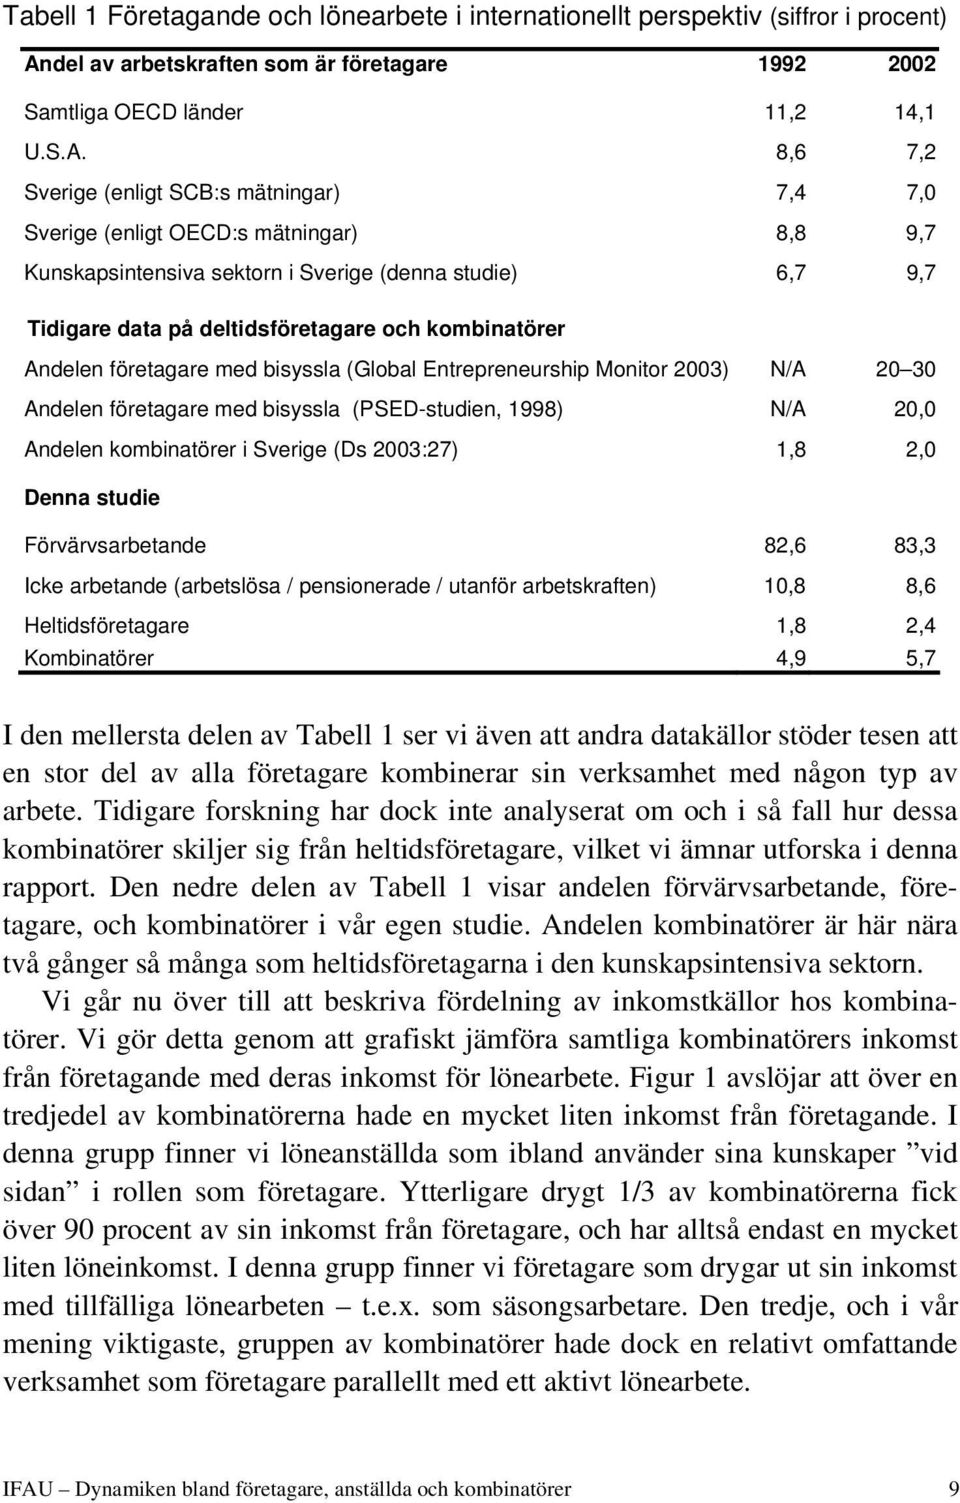 8,6 7,2 Sverige (enligt SCB:s mätningar) 7,4 7,0 Sverige (enligt OECD:s mätningar) 8,8 9,7 Kunskapsintensiva sektorn i Sverige (denna studie) 6,7 9,7 Tidigare data på deltidsföretagare och